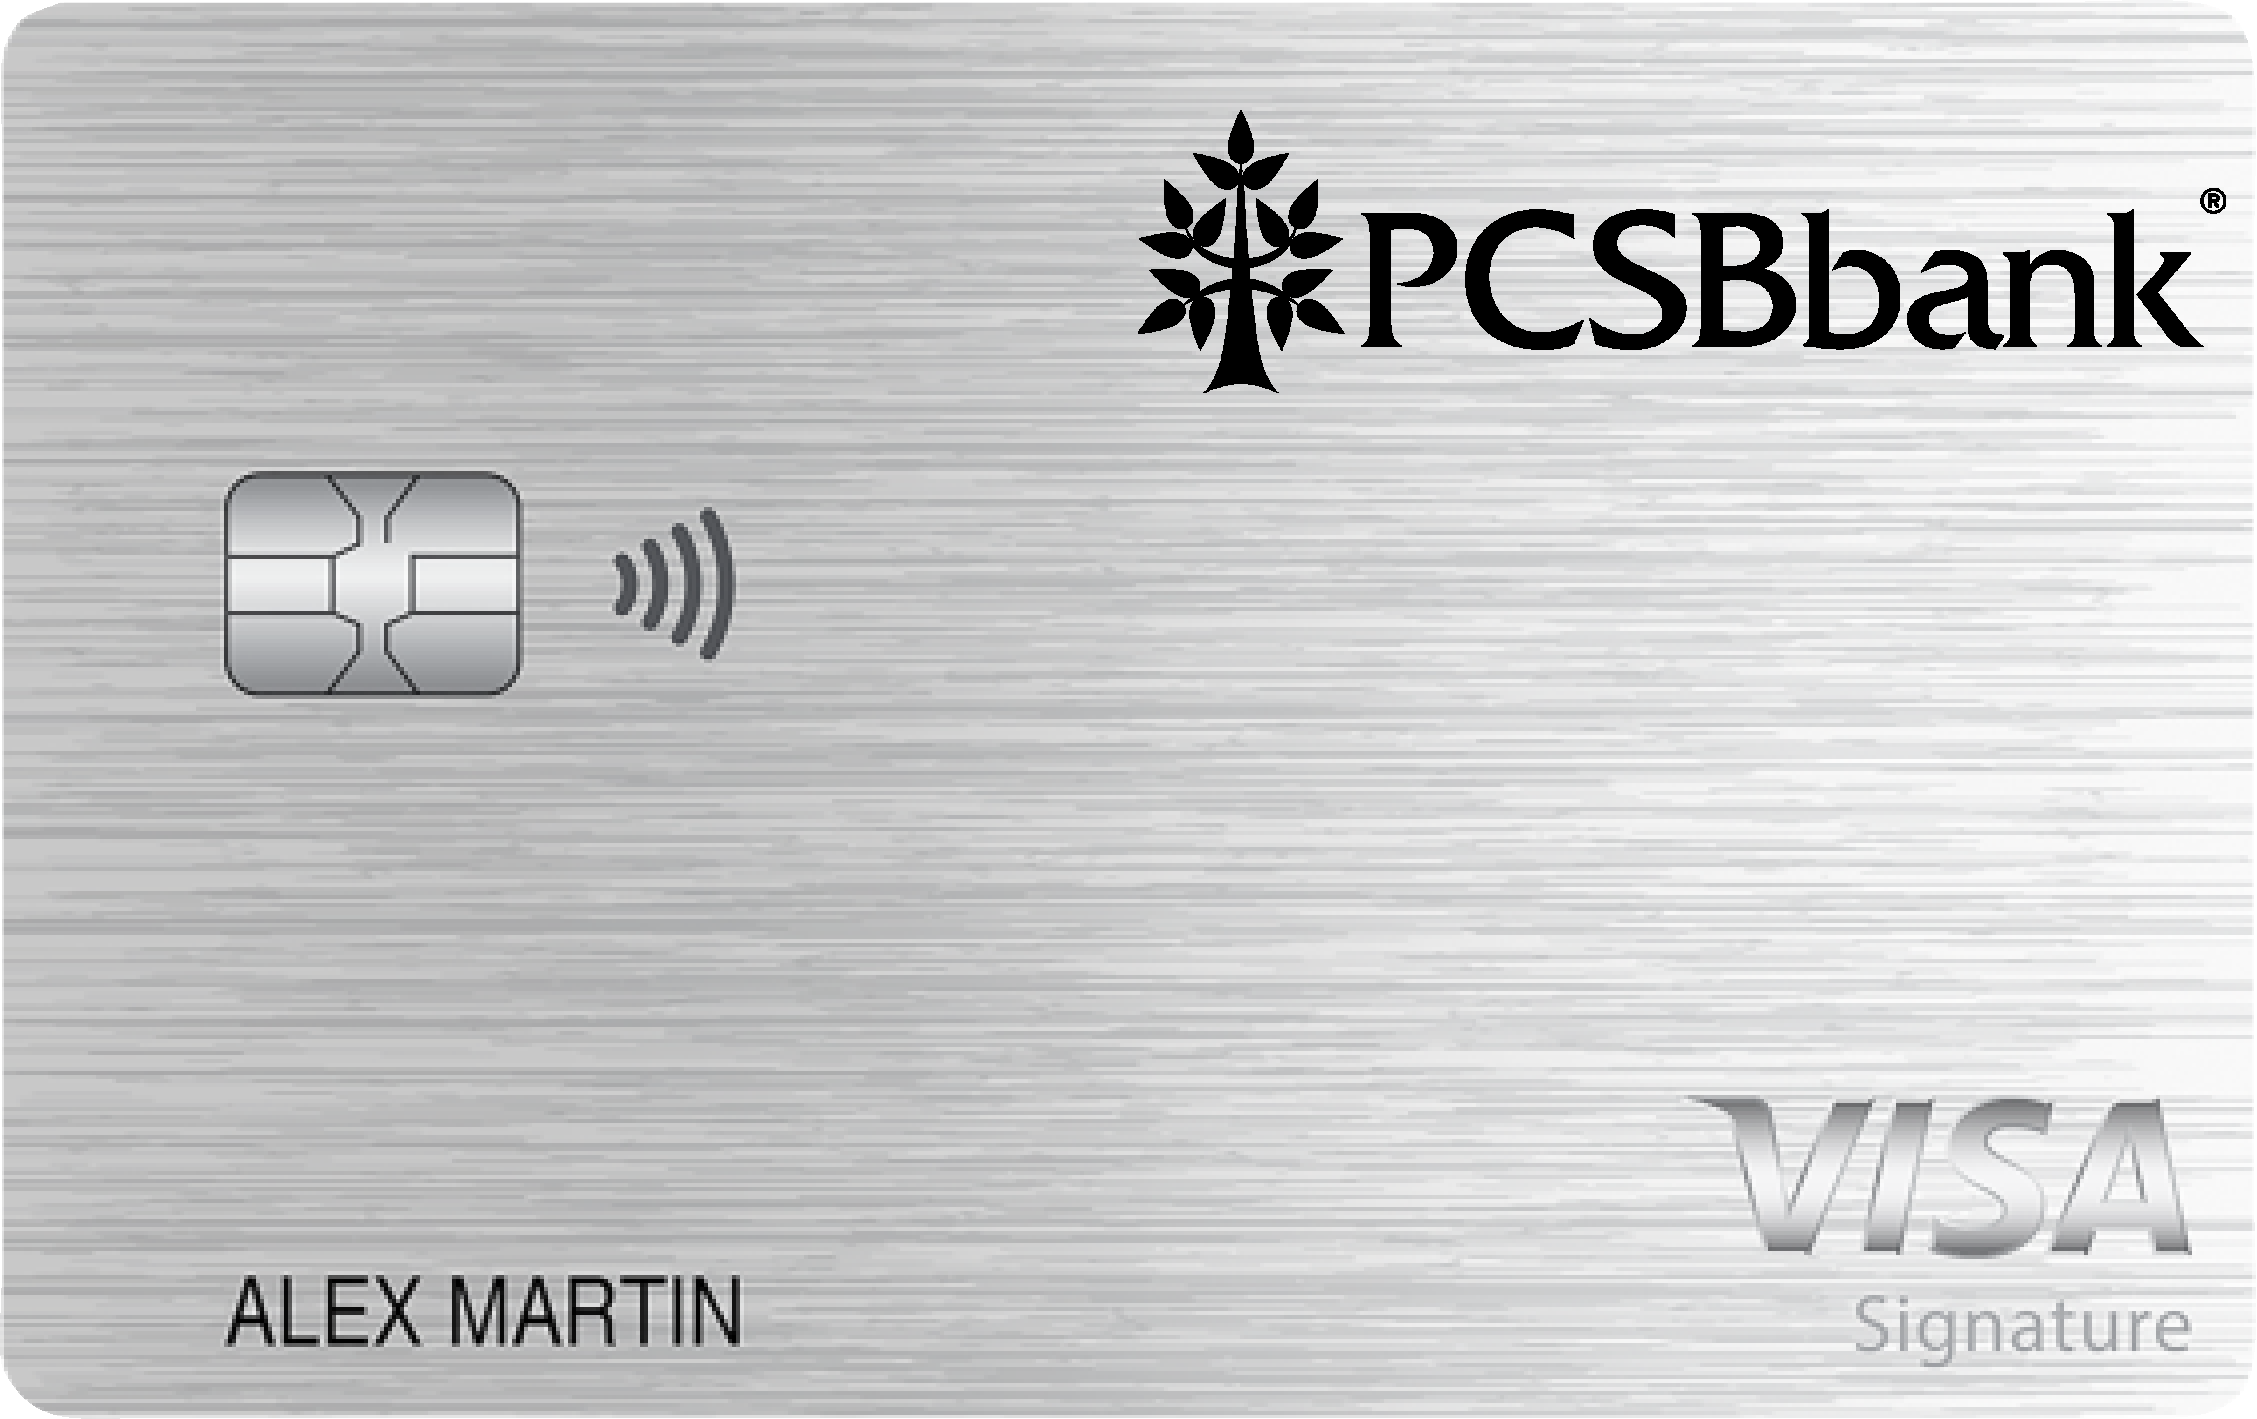 PCSB Bank